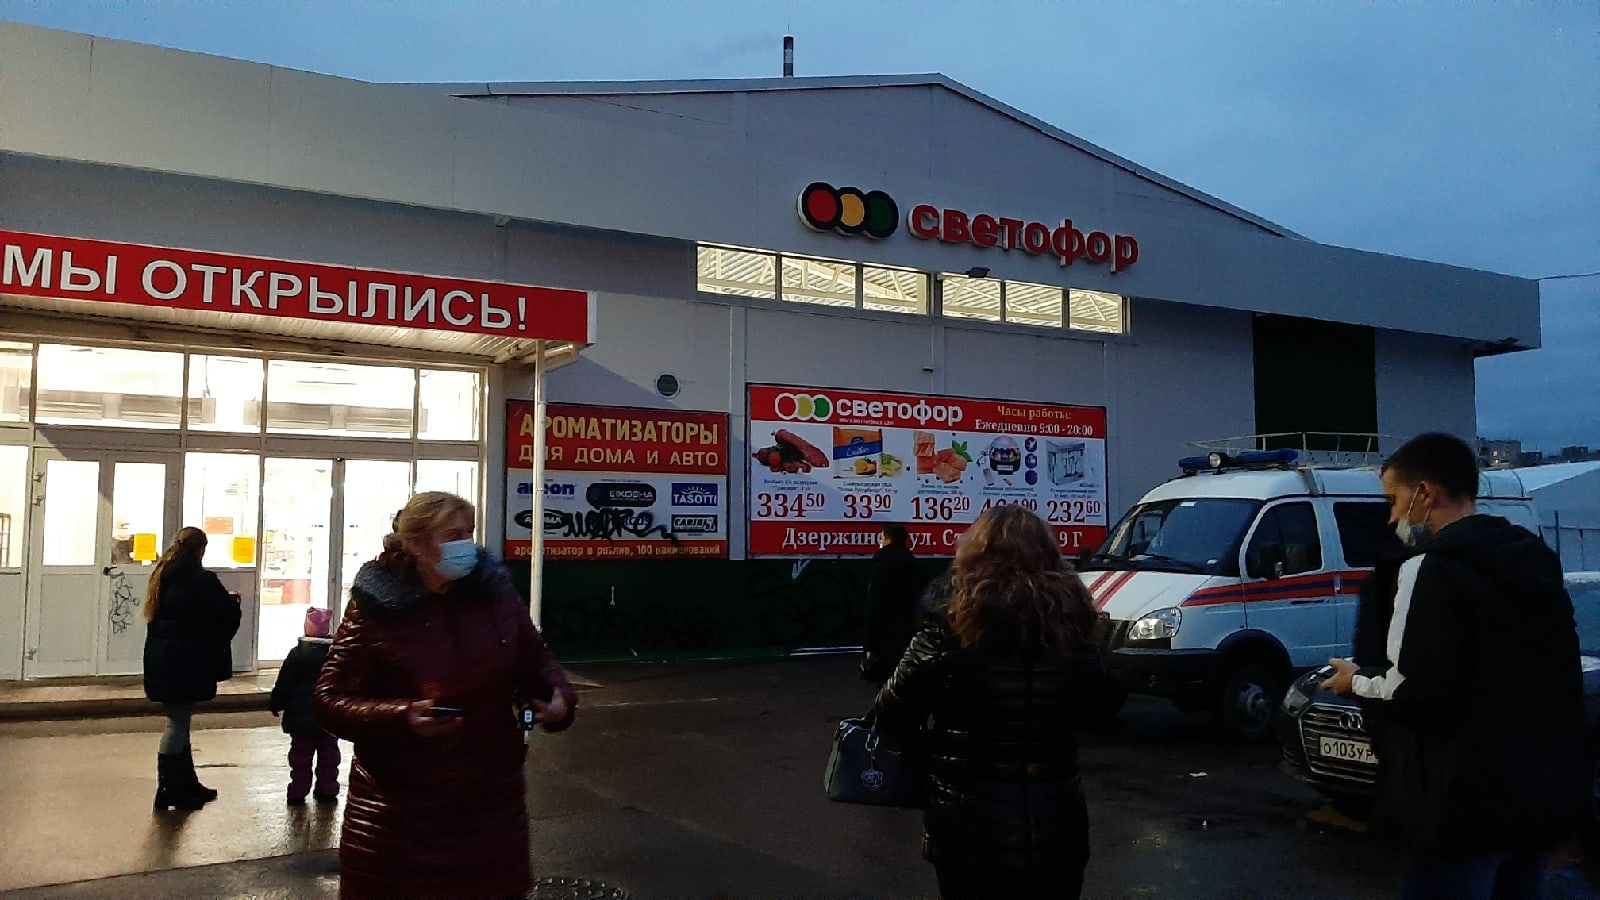 Стеллаж рухнул на людей в магазине "Светофор" в Дзержинске